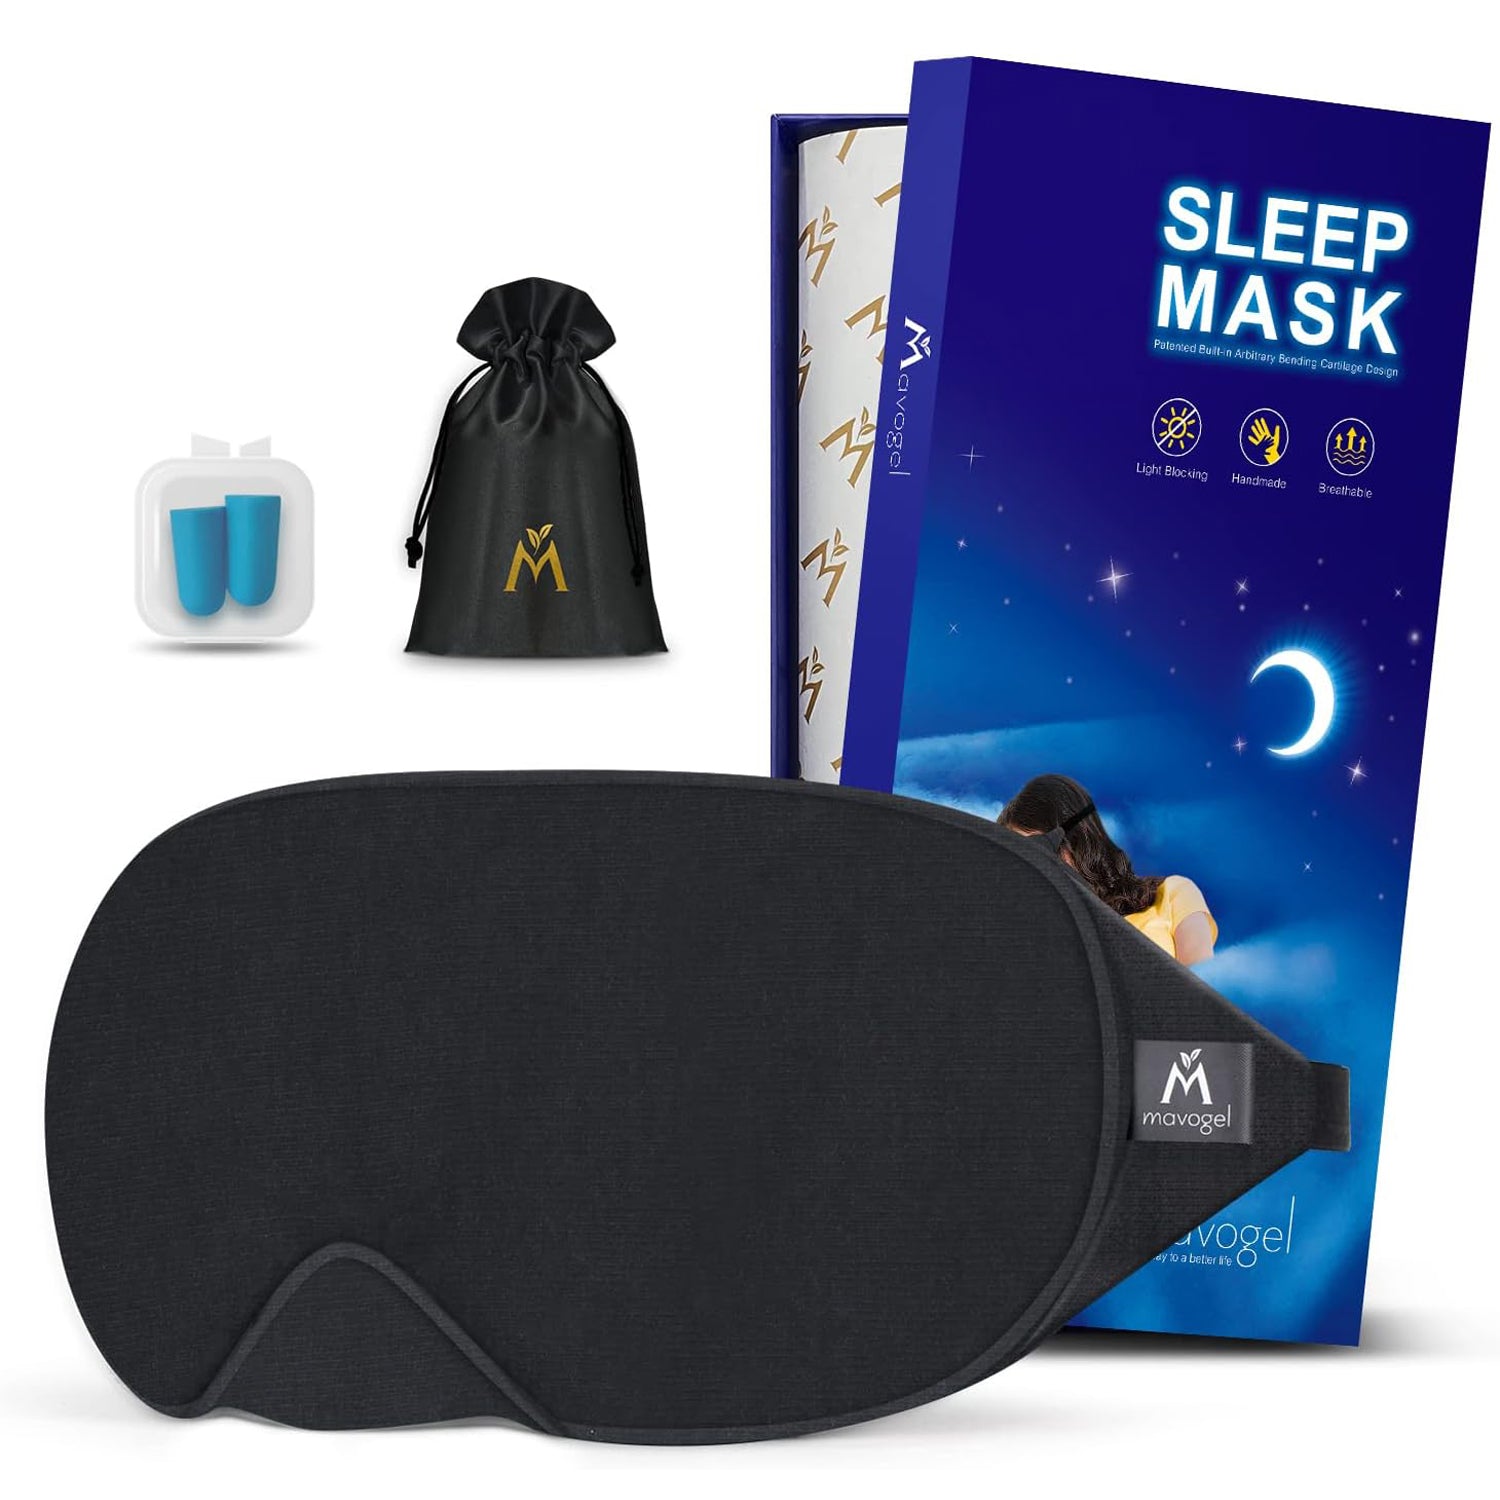 Mavogel Upgraded Sleep Mask - Luxury Cotton Sleep Eye Mask with Adjust